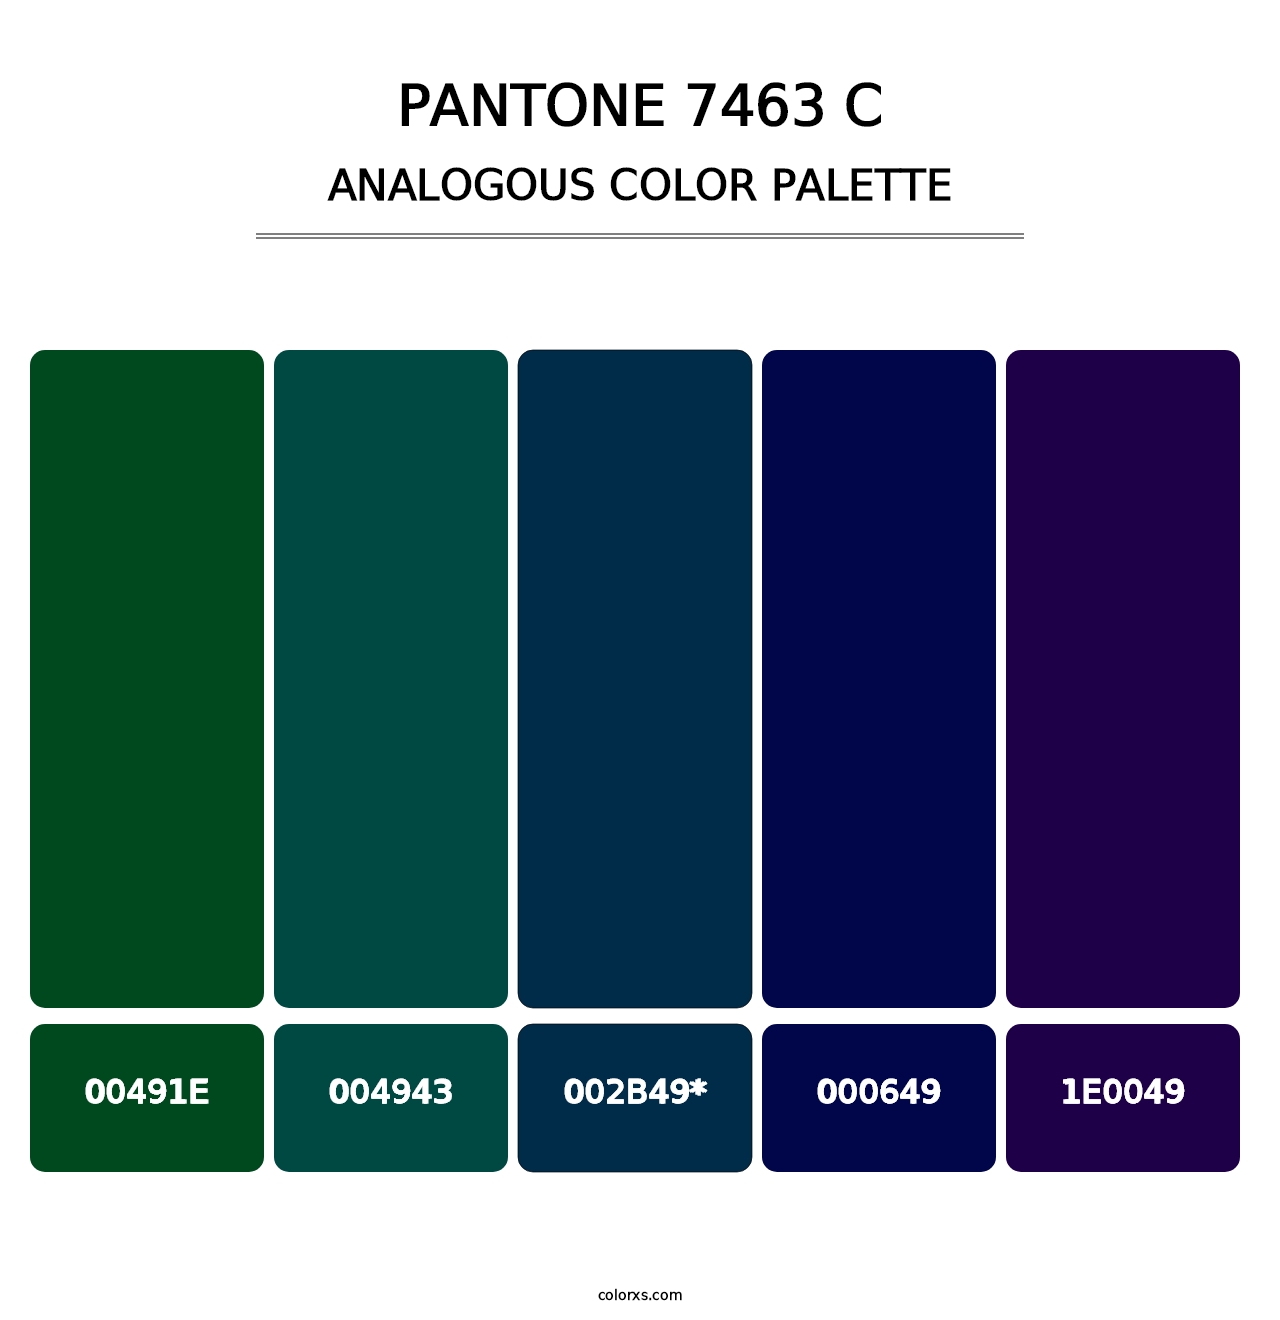 PANTONE 7463 C - Analogous Color Palette